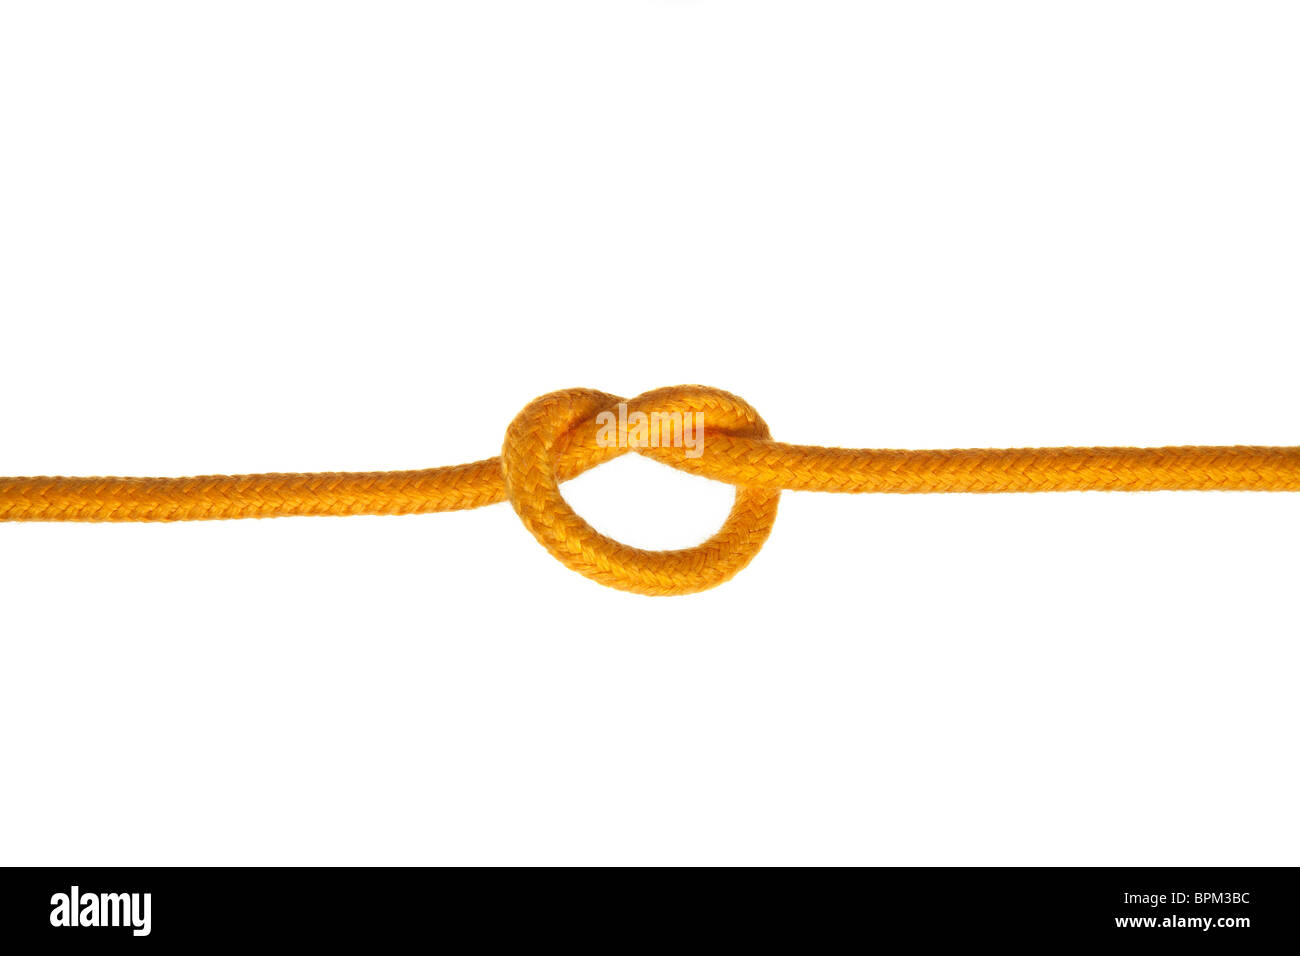 Une corde jaune avec un noeud sur un fond blanc Banque D'Images